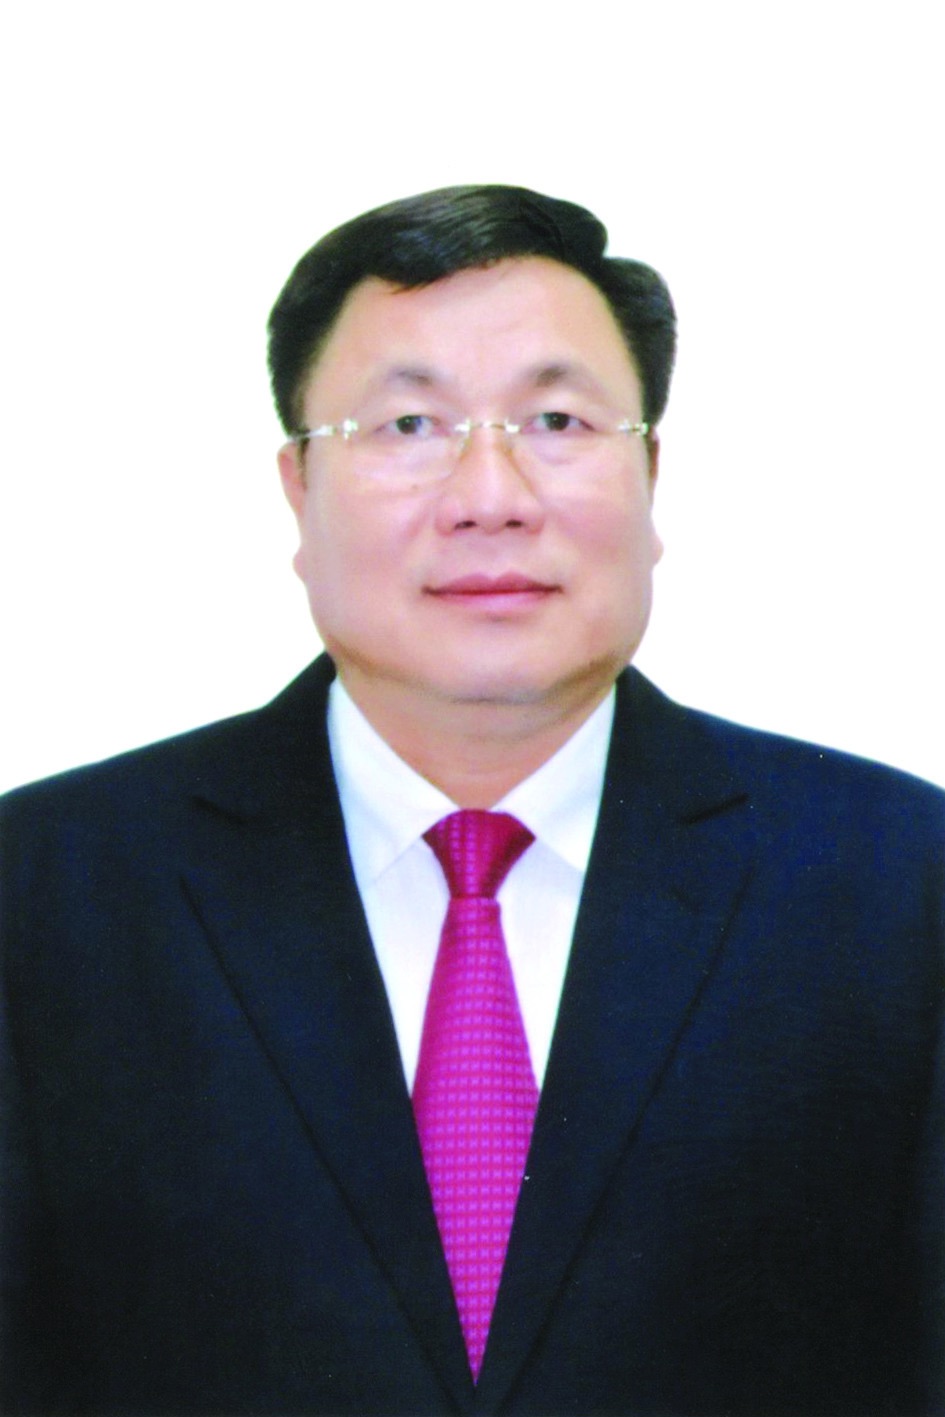 Chương trình hành động của Bí thư Quận ủy Hoàng Mai Nguyễn Quang Hiếu, ứng cử viên đại biểu HĐND TP Hà Nội nhiệm kỳ 2021 - 2026 - Ảnh 1